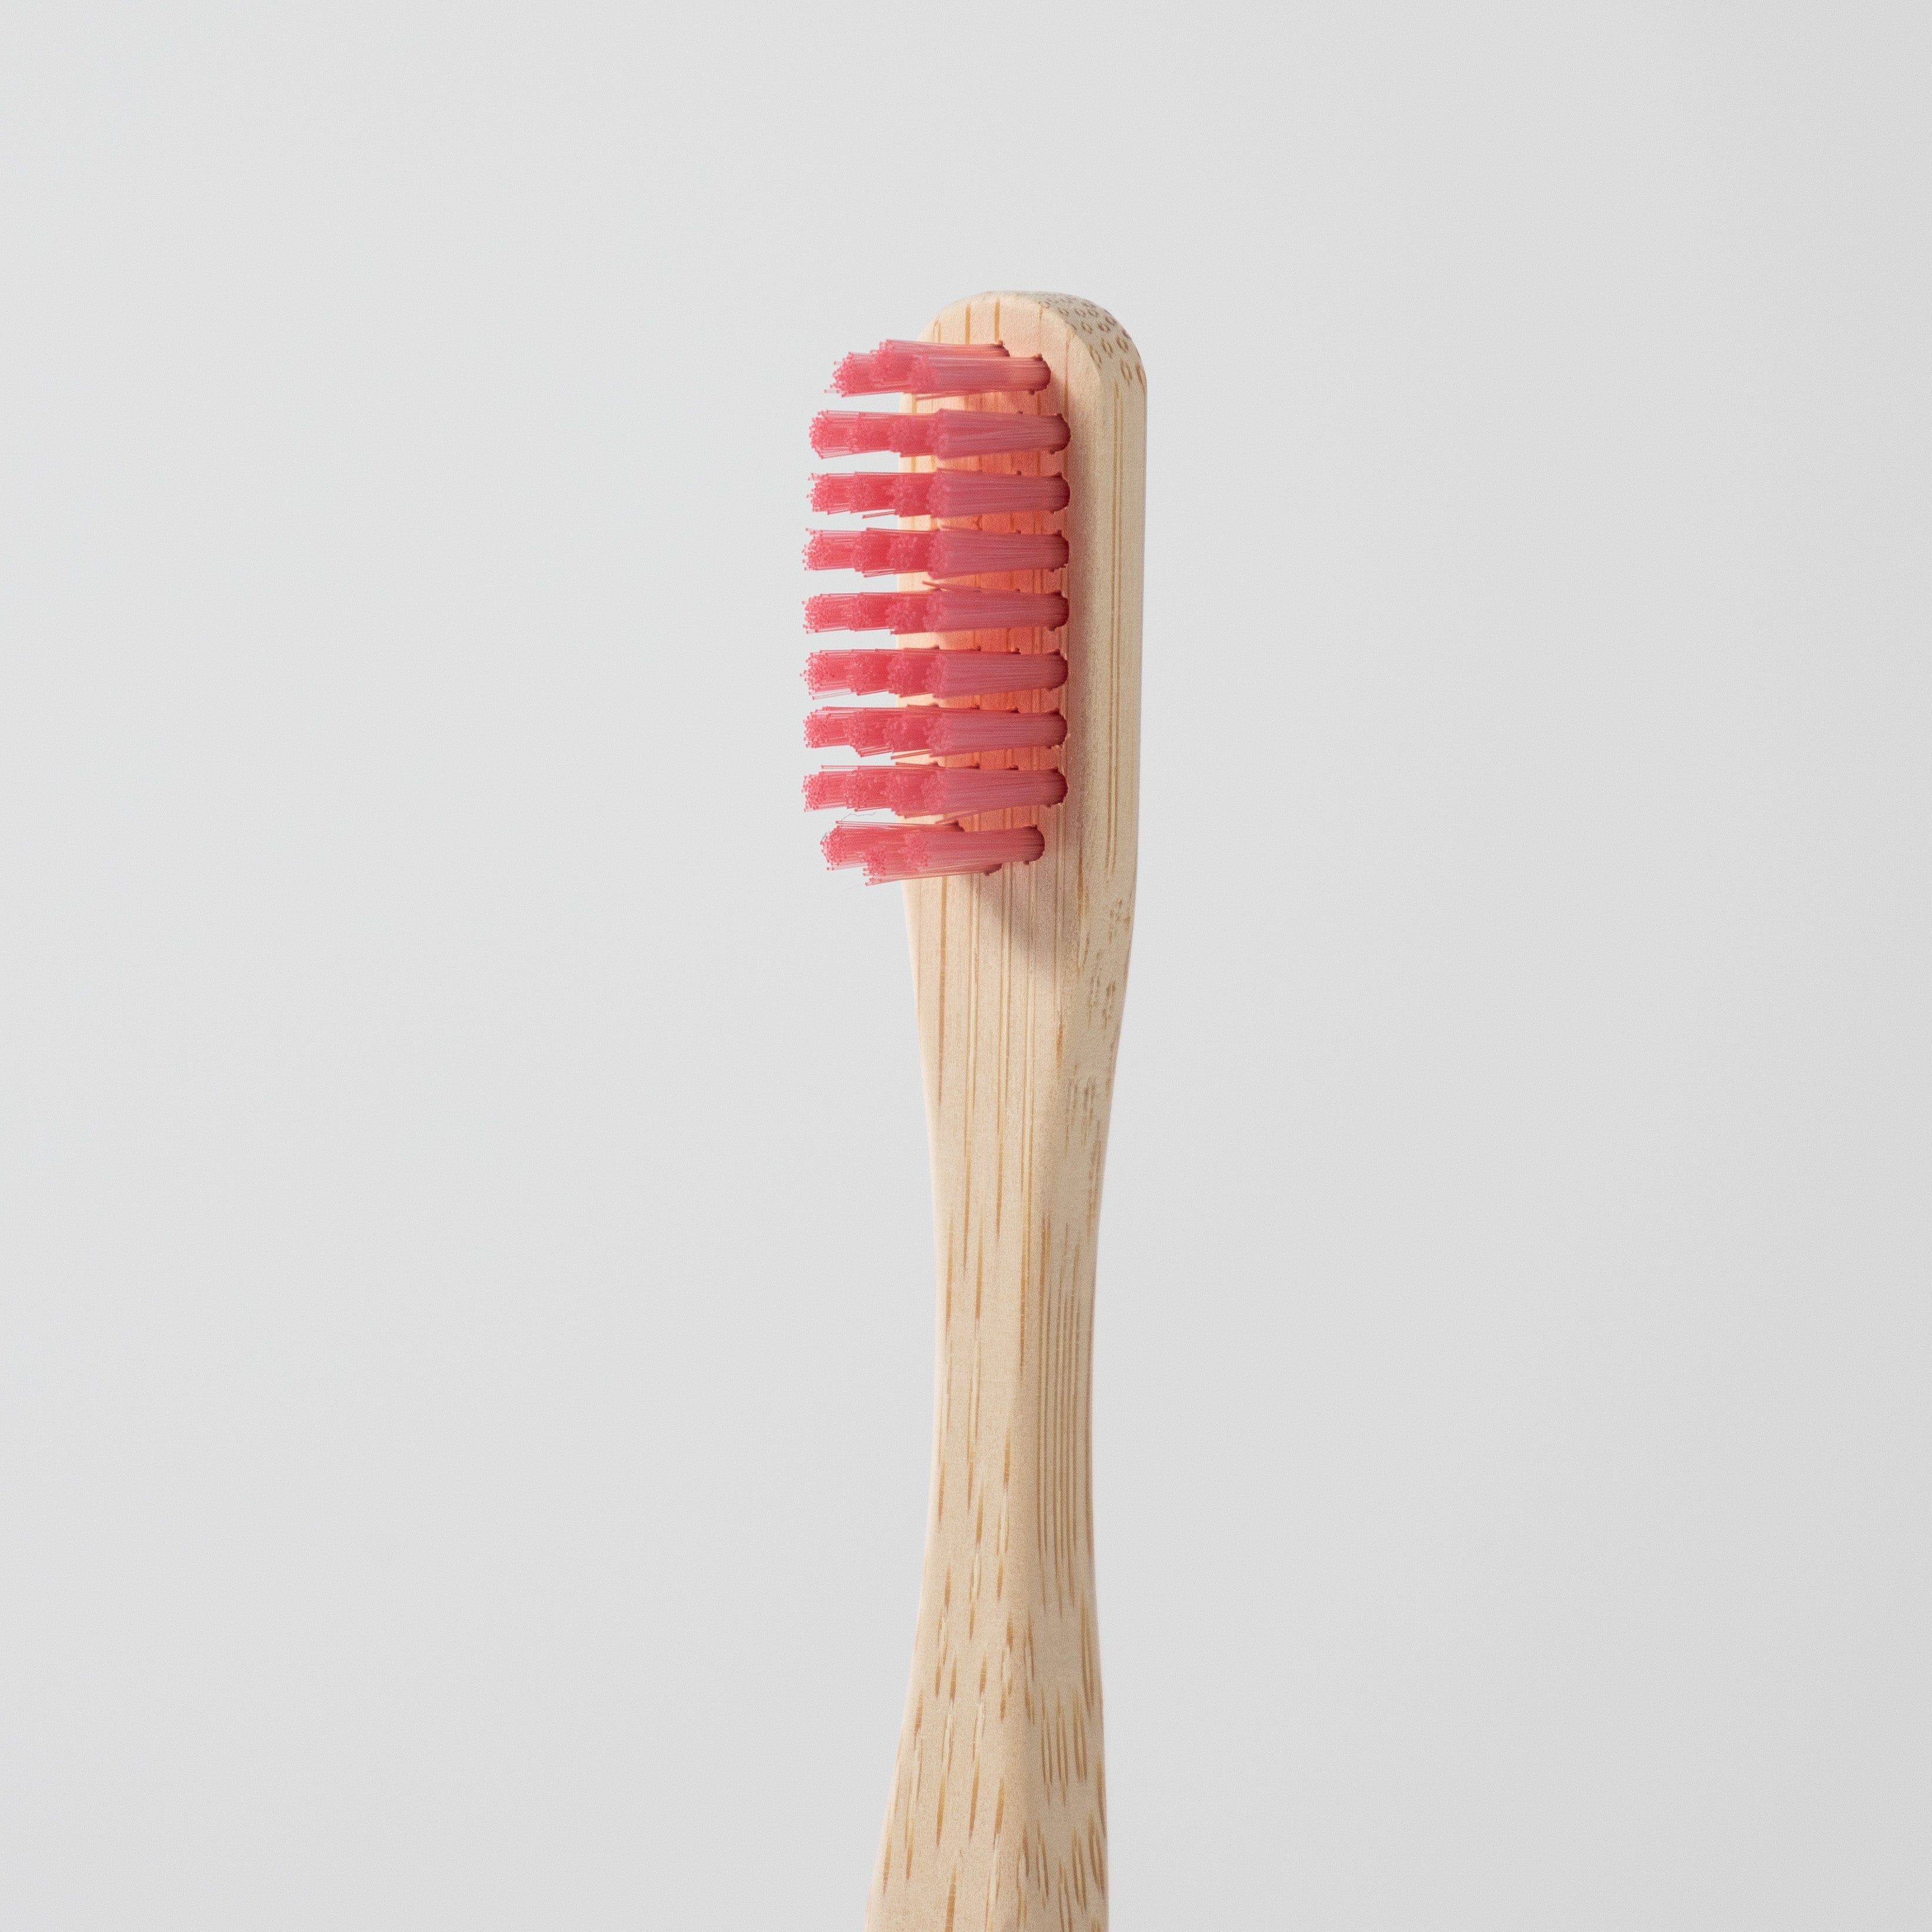 Pink bristles of bamboo toothbrush